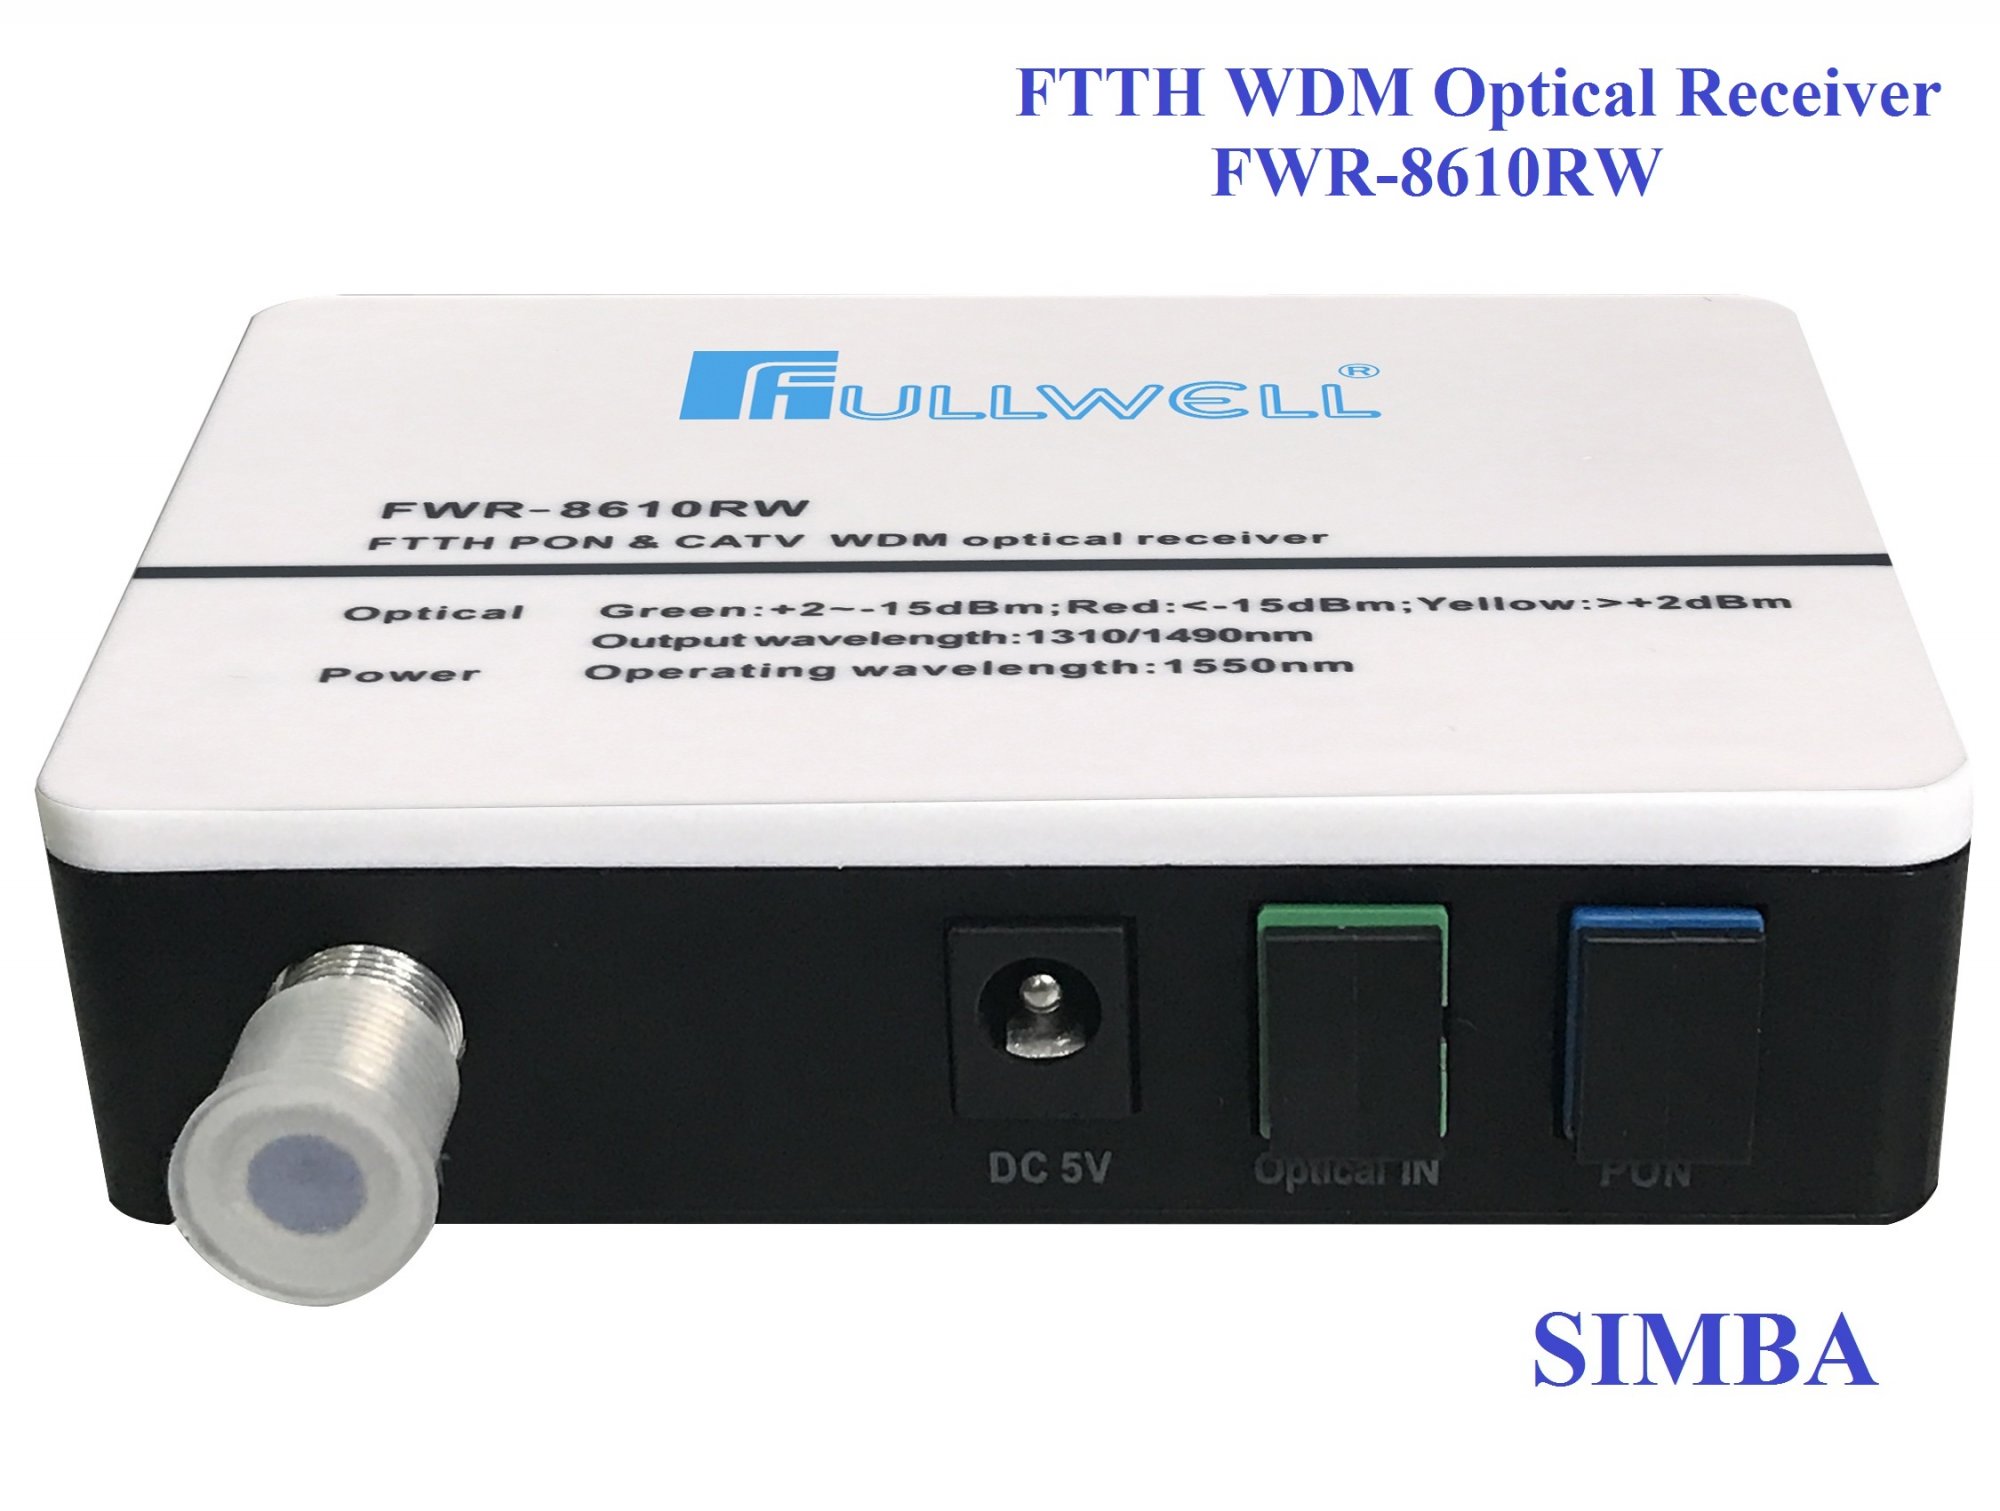 FTTH WDM Optical Receiver FWR-8610RW